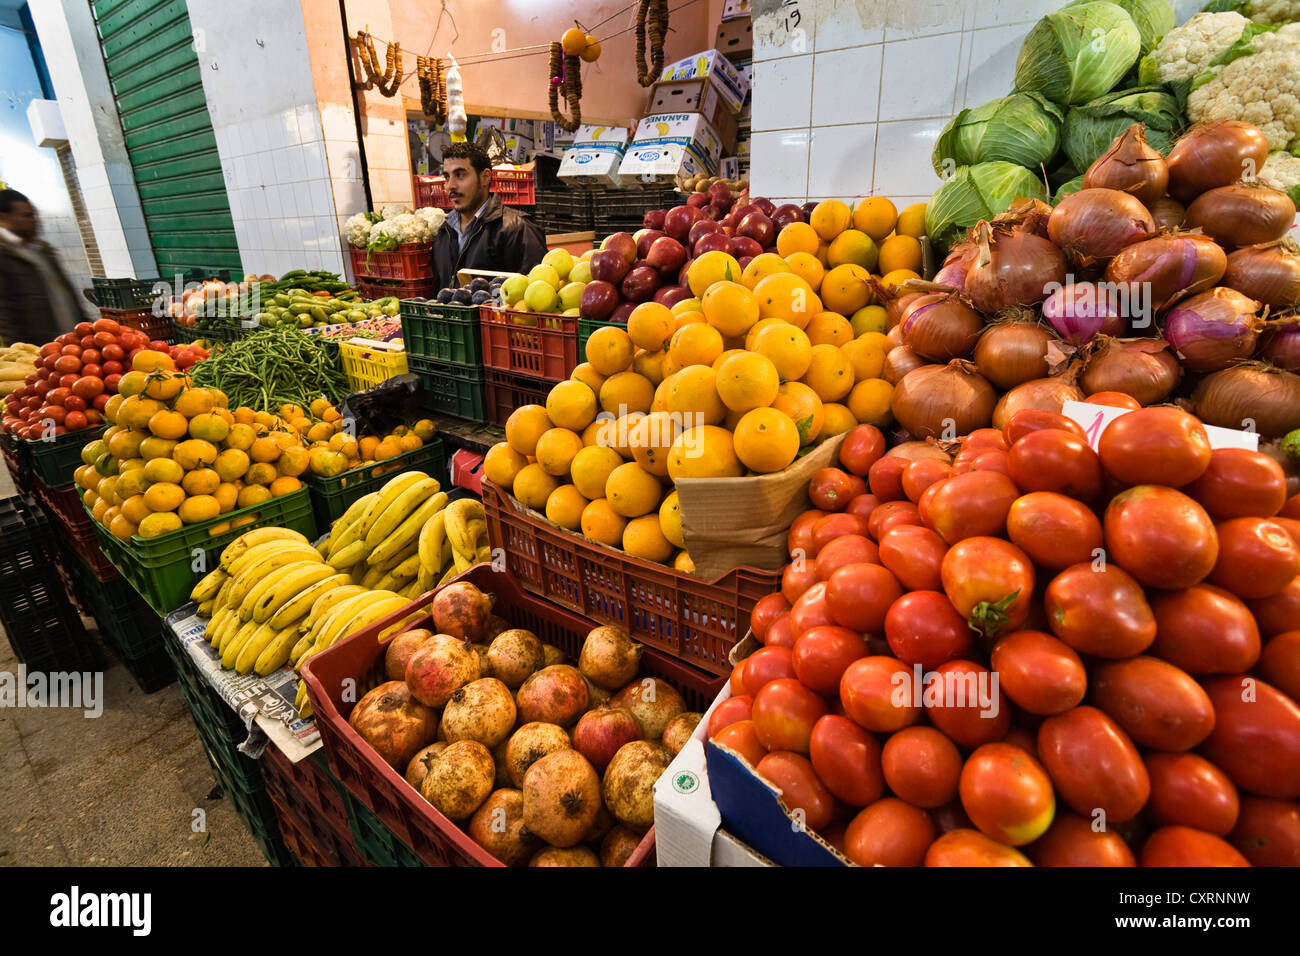 Stand de fruits et légumes, légumes du marché à Tripoli, Libye, Afrique Banque D'Images